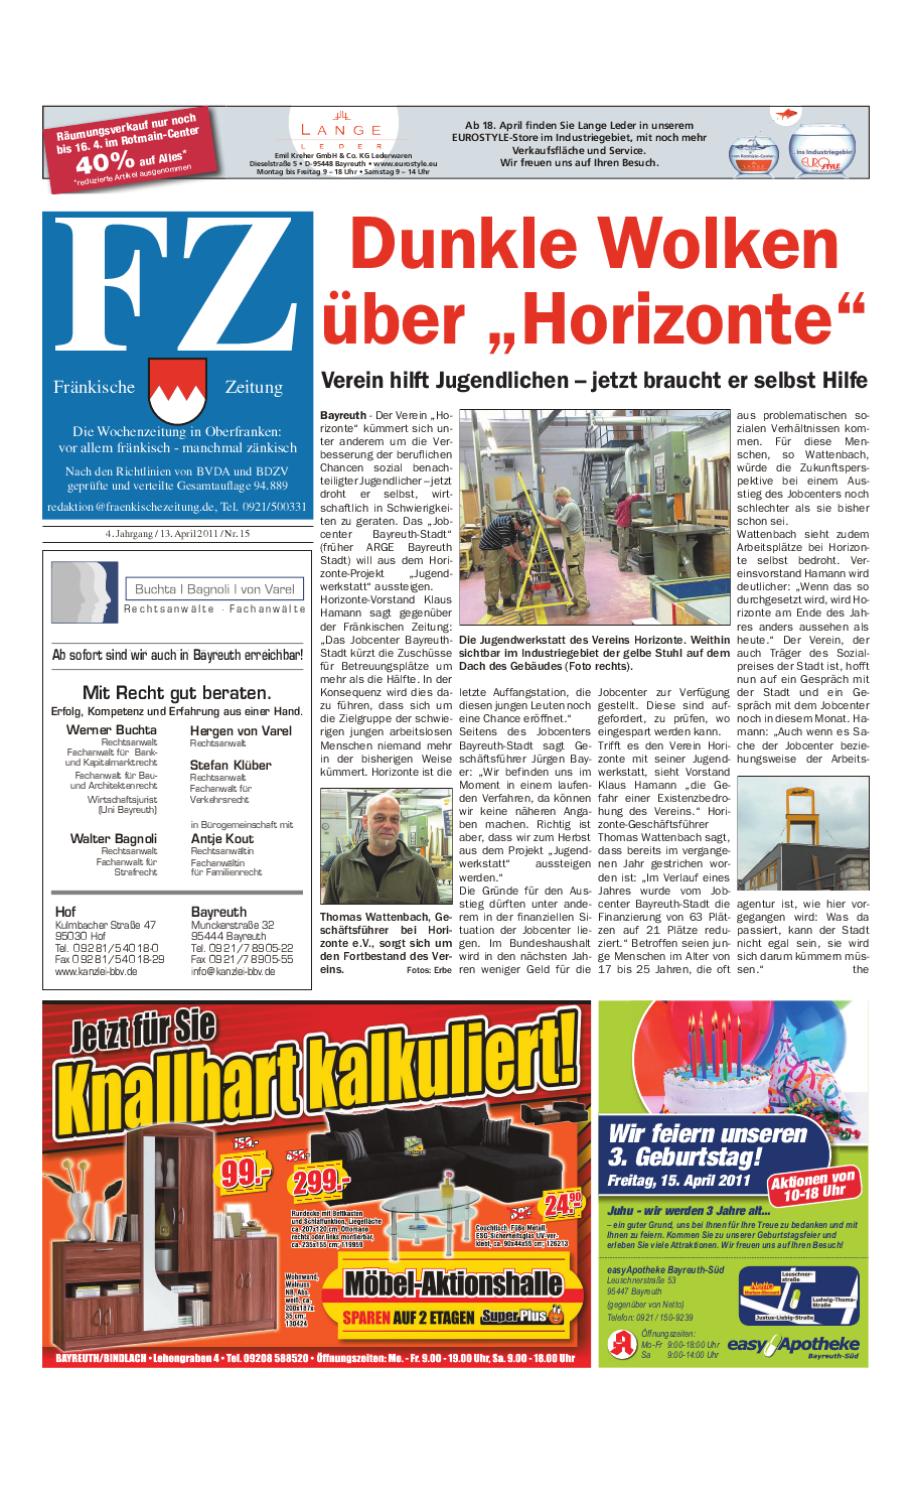 Alte Holzleiter Kaufen Inspirierend Fränkische Zeitung Vom 13 04 2011 by nordbayerischer Kurier